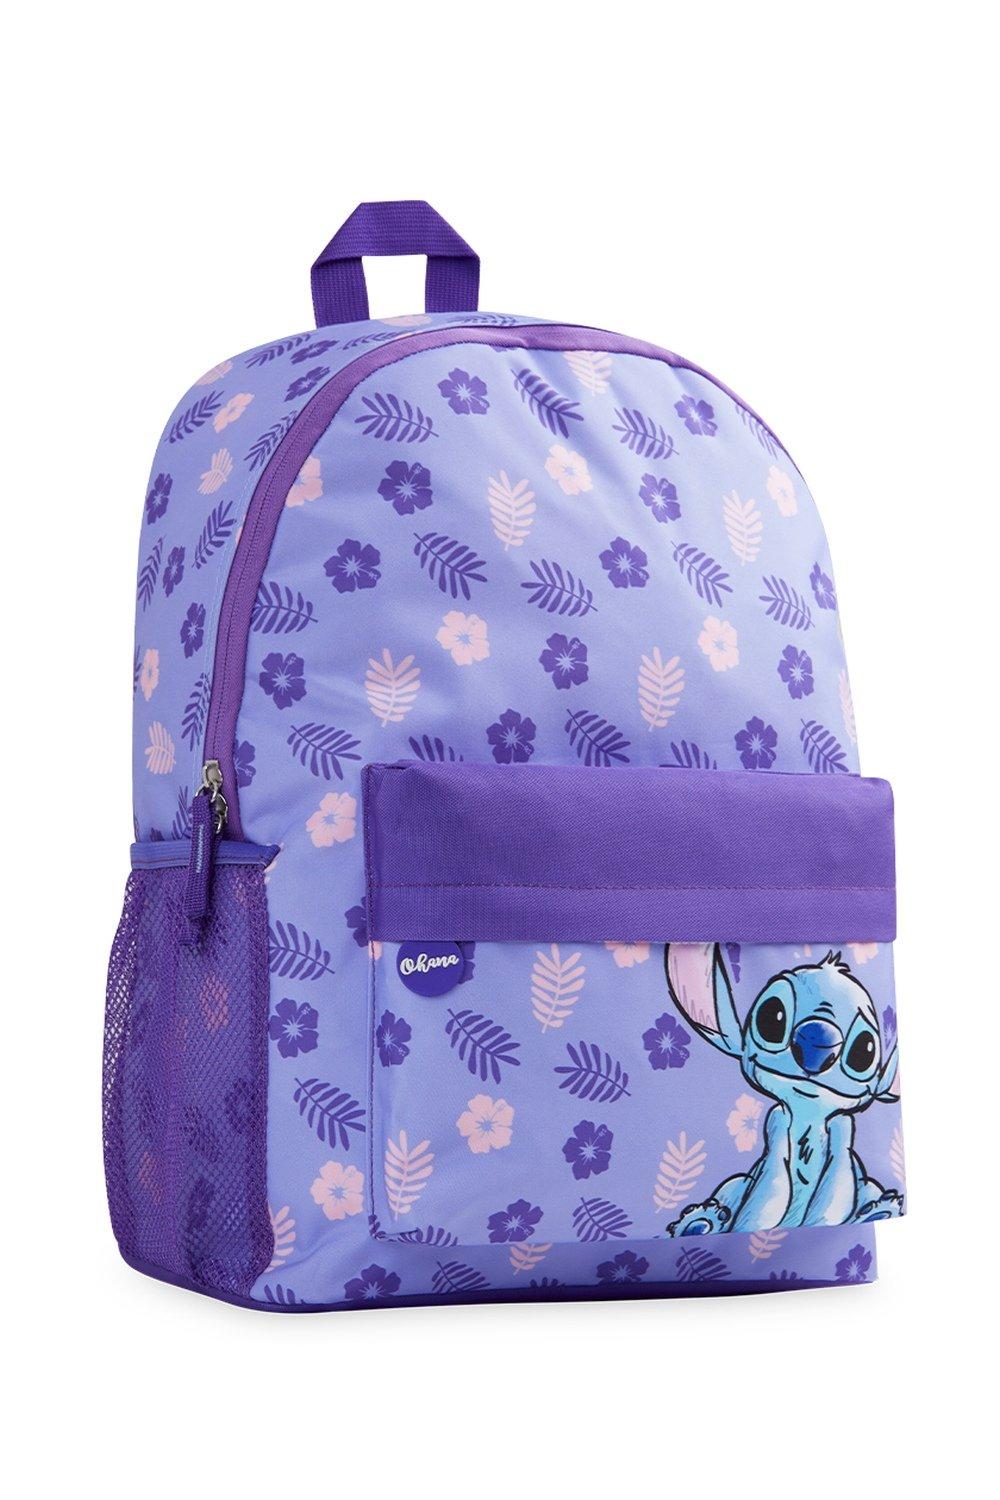 Школьная сумка Лило и Стич Disney, фиолетовый hot kawaii disney stitch plush doll toys cute anime lilo